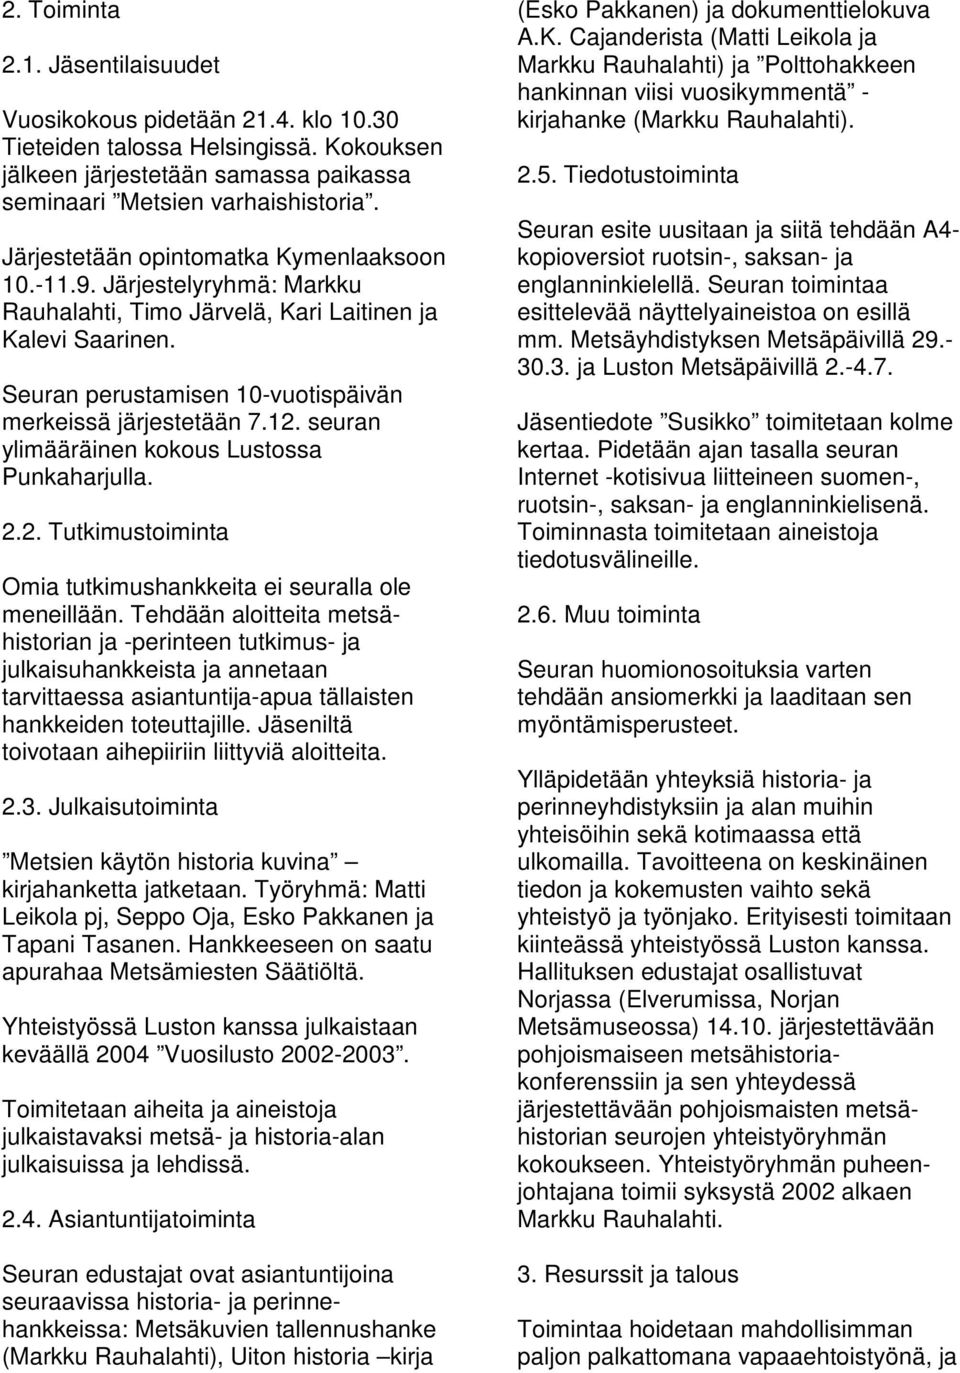 seuran ylimääräinen kokous Lustossa Punkaharjulla. 2.2. Tutkimustoiminta Omia tutkimushankkeita ei seuralla ole meneillään.